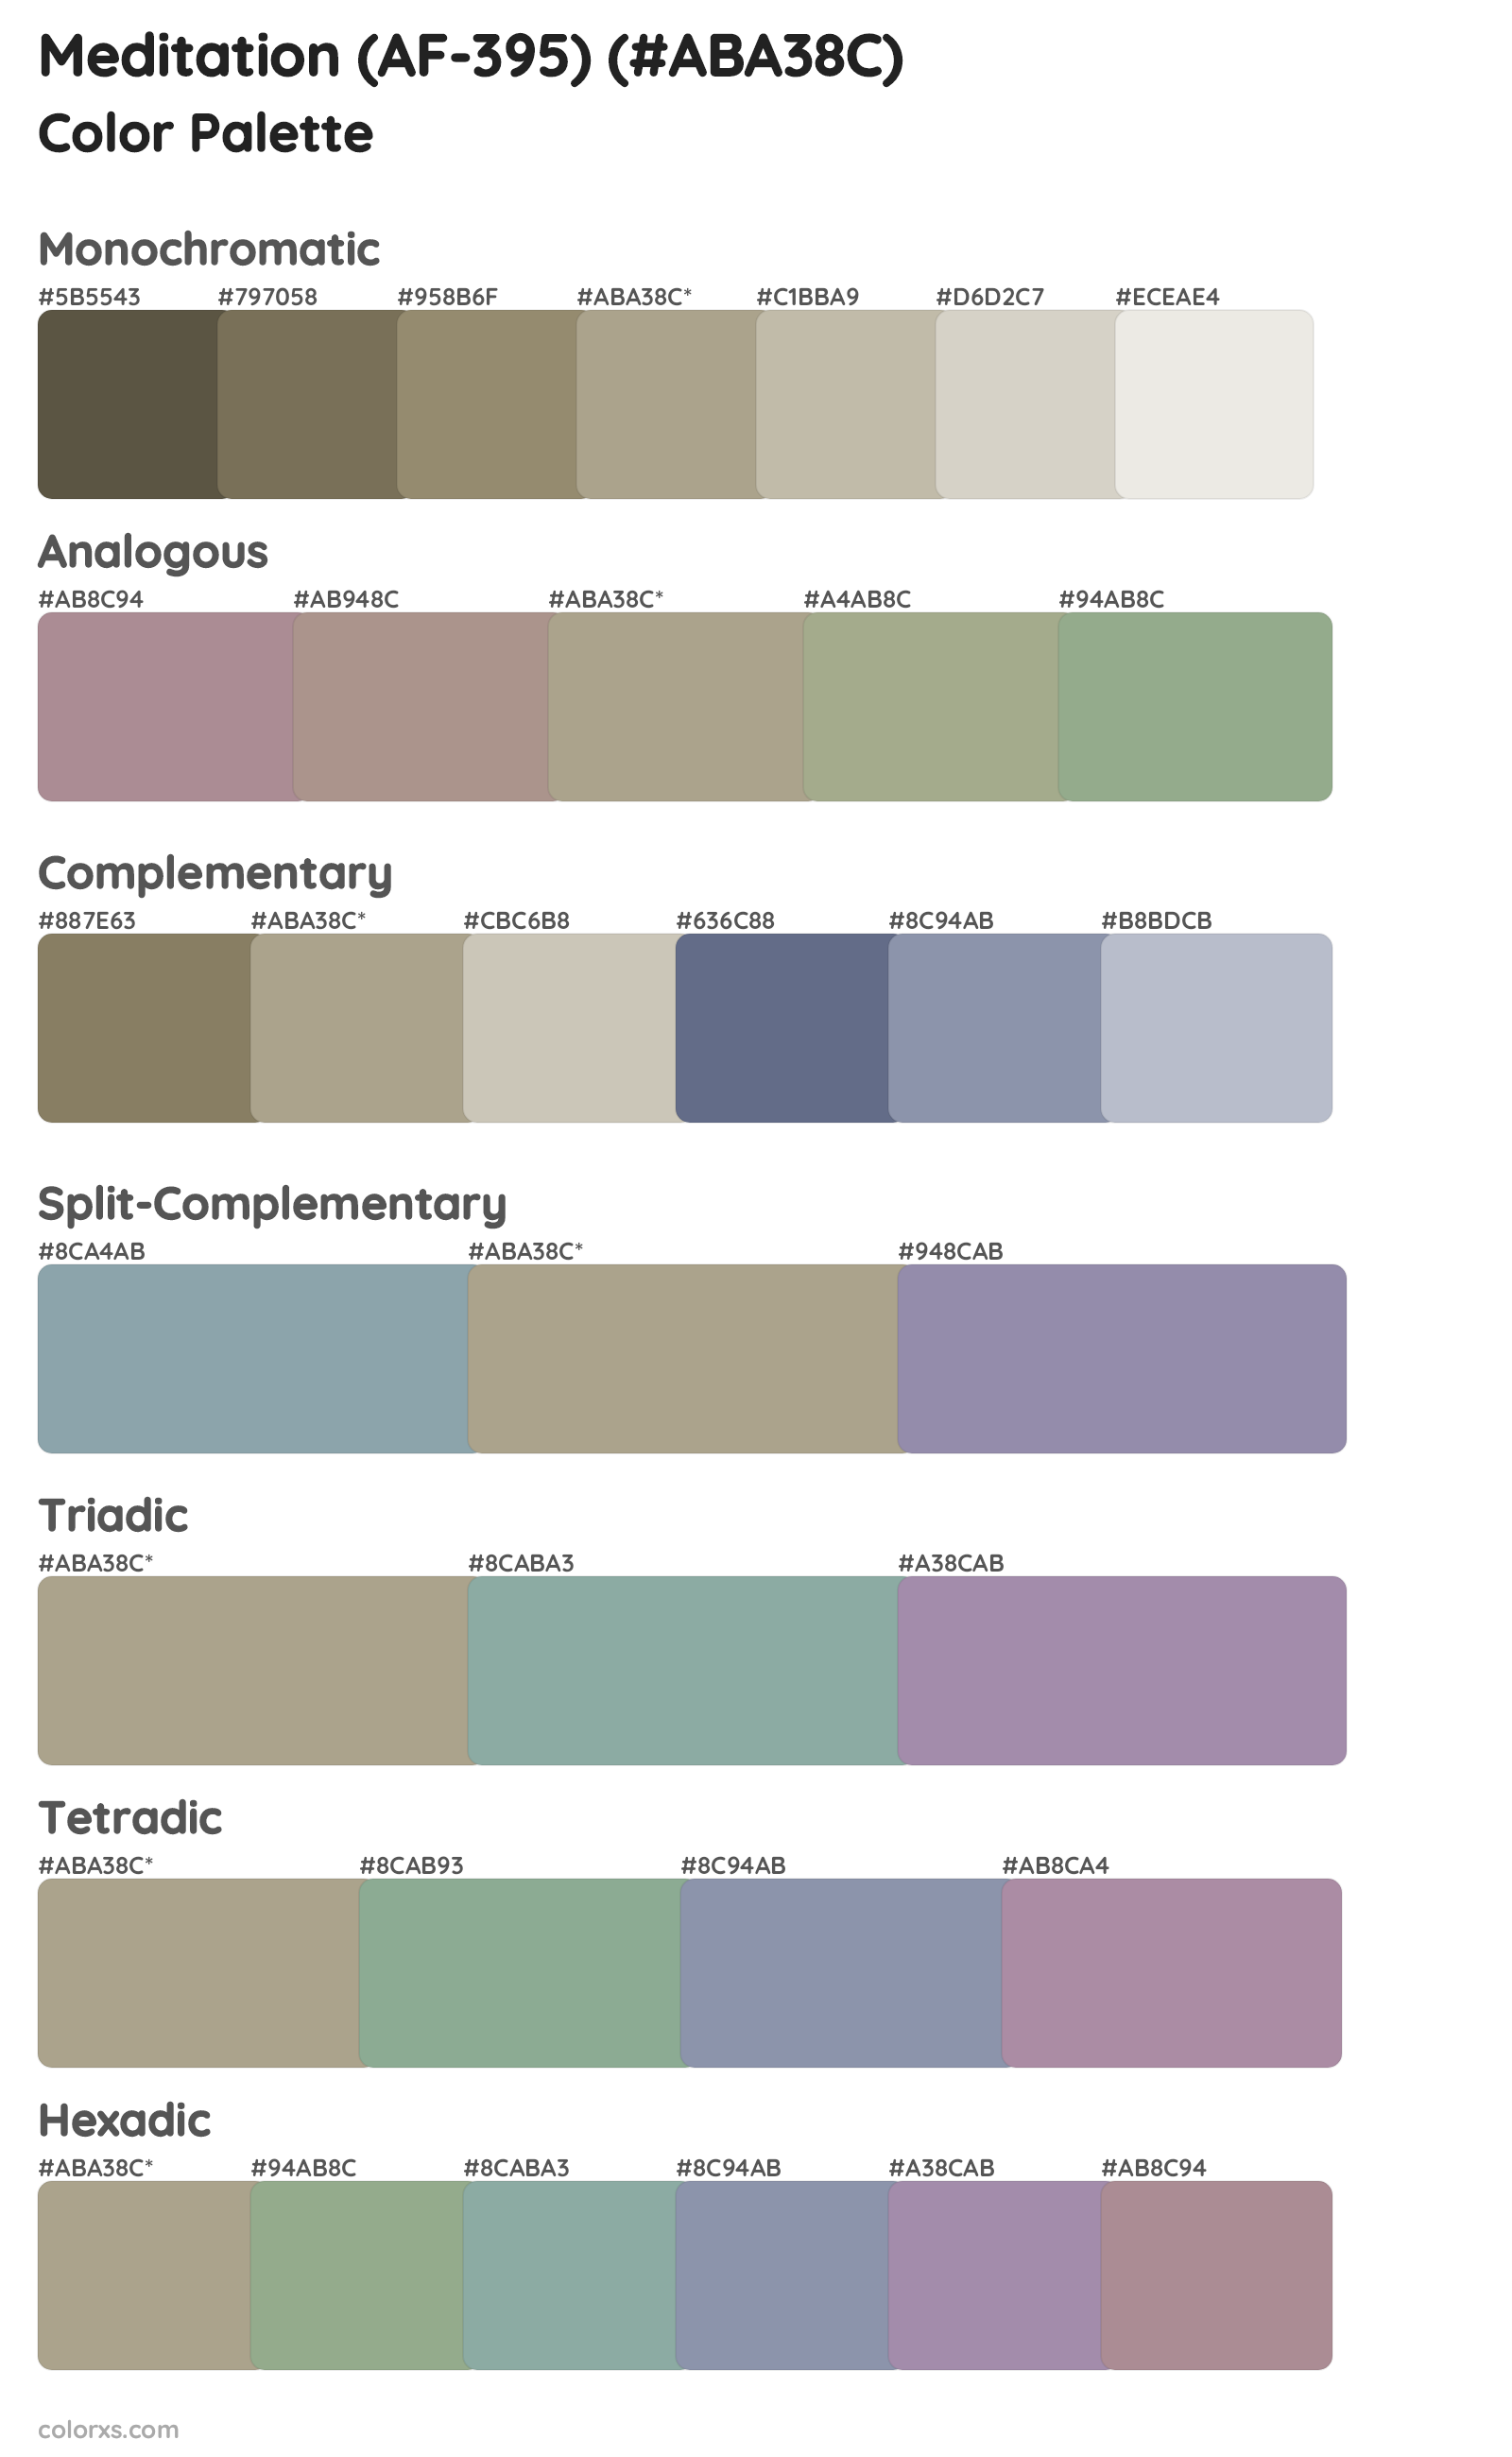 Meditation (AF-395) Color Scheme Palettes